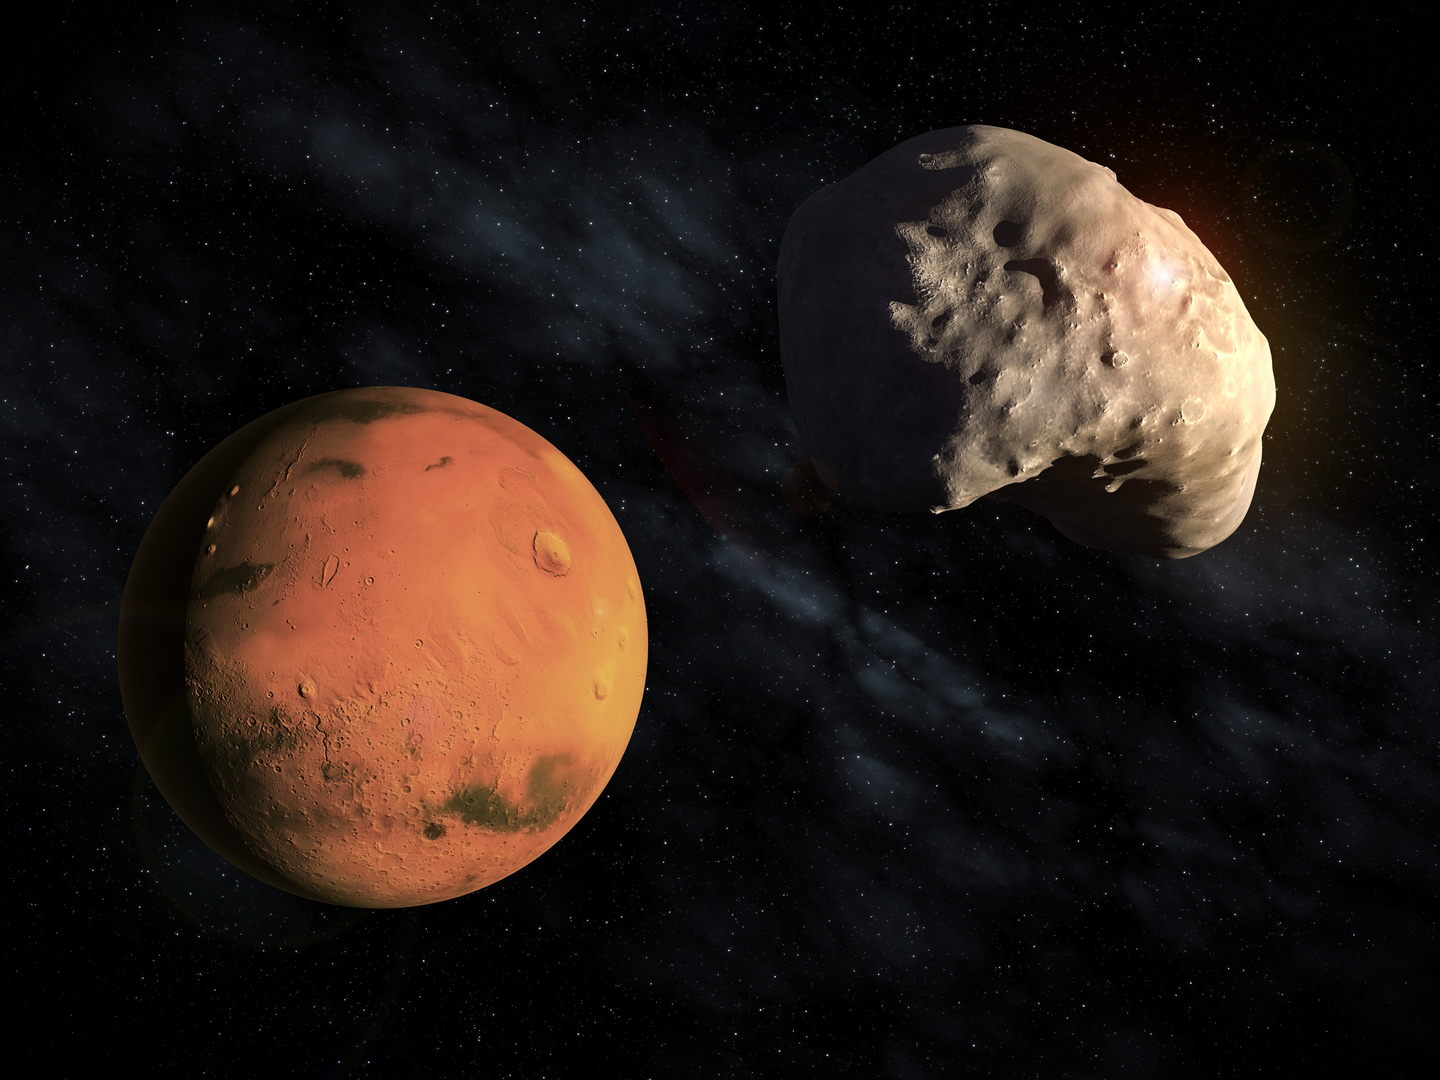 المريخ وقمره الصغير ديموس